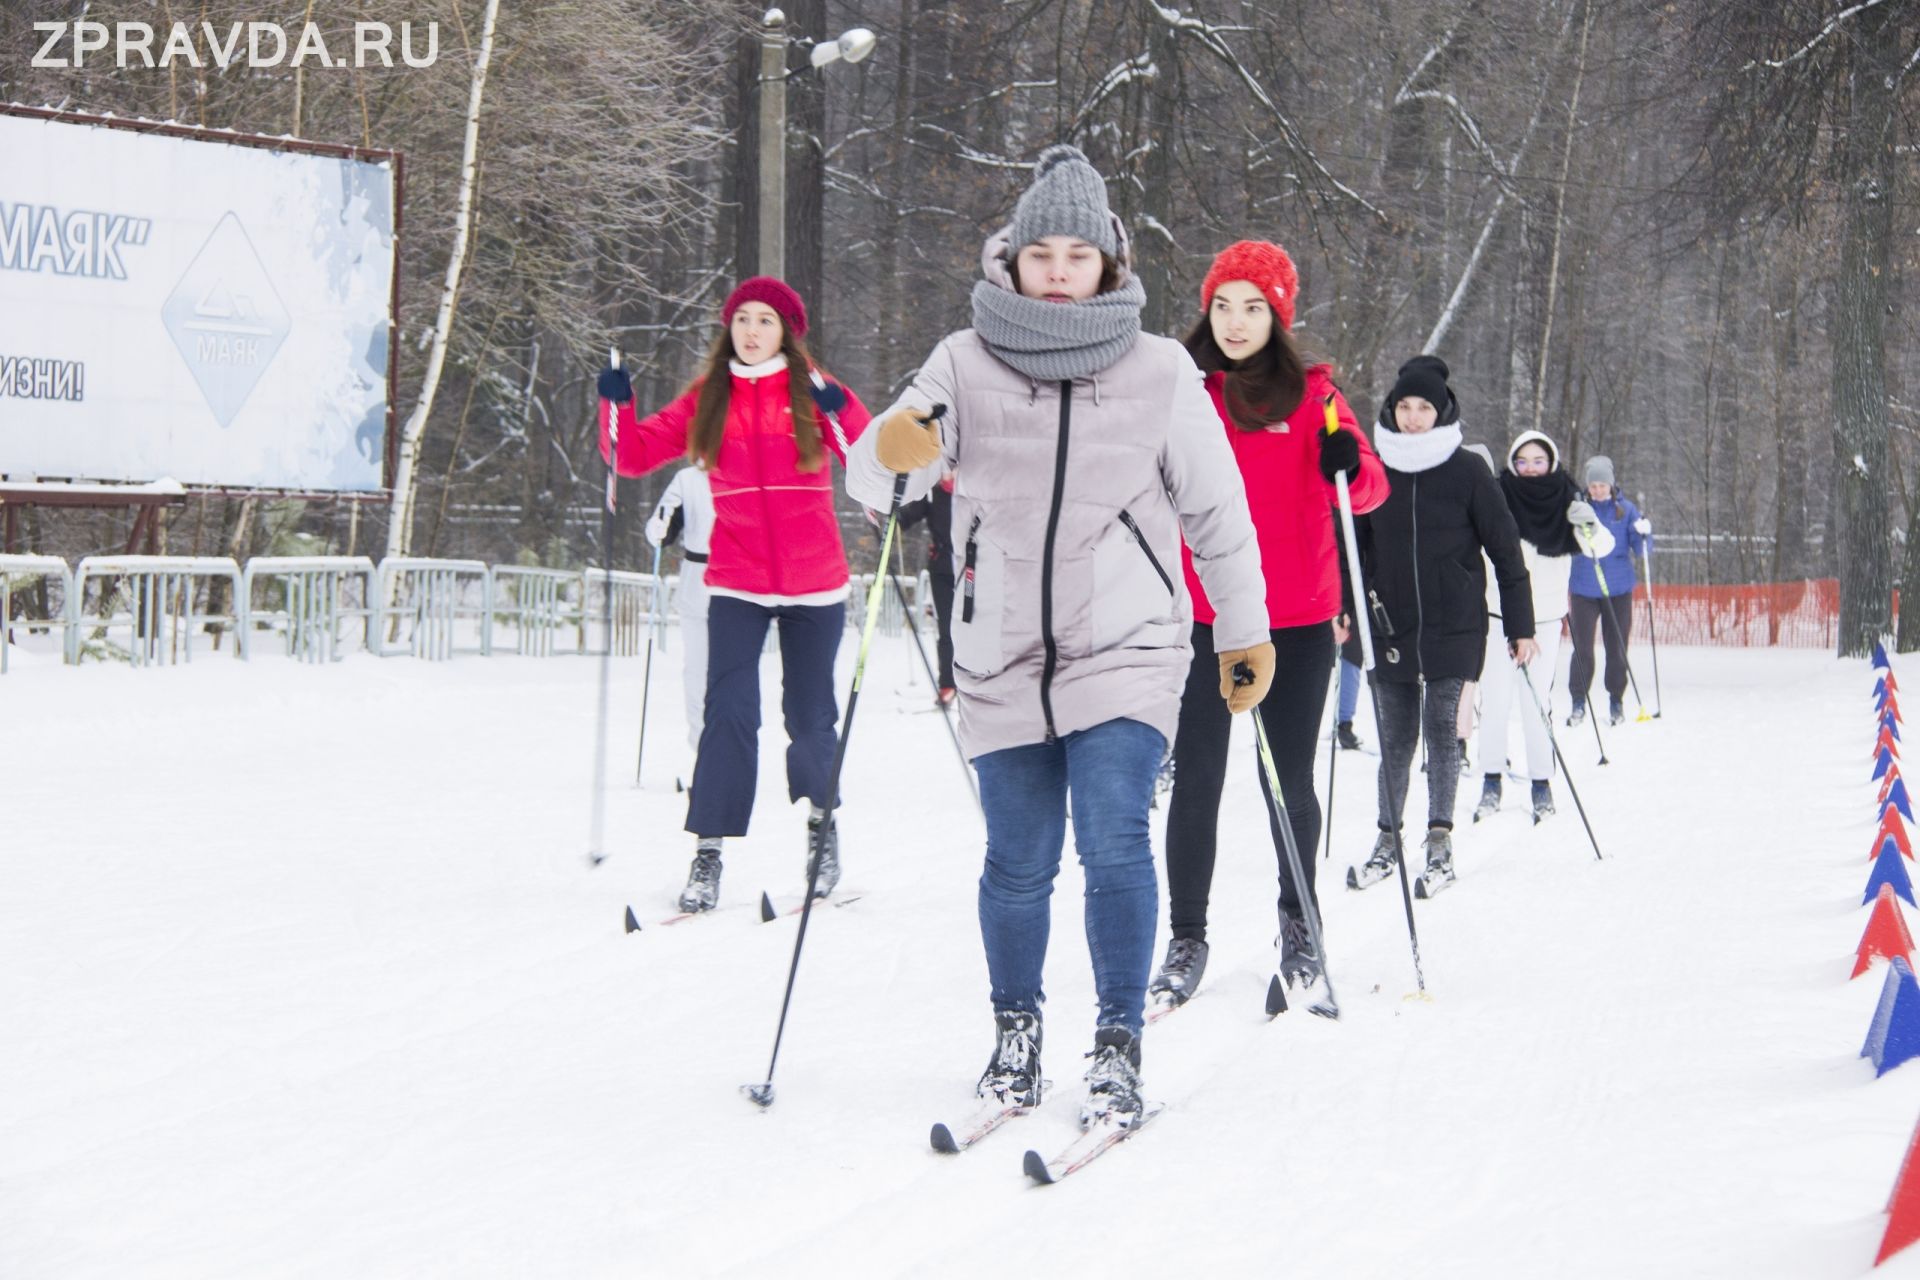 Трассы «Лыжни России» собрали в этом году рекордное количество спортсменов